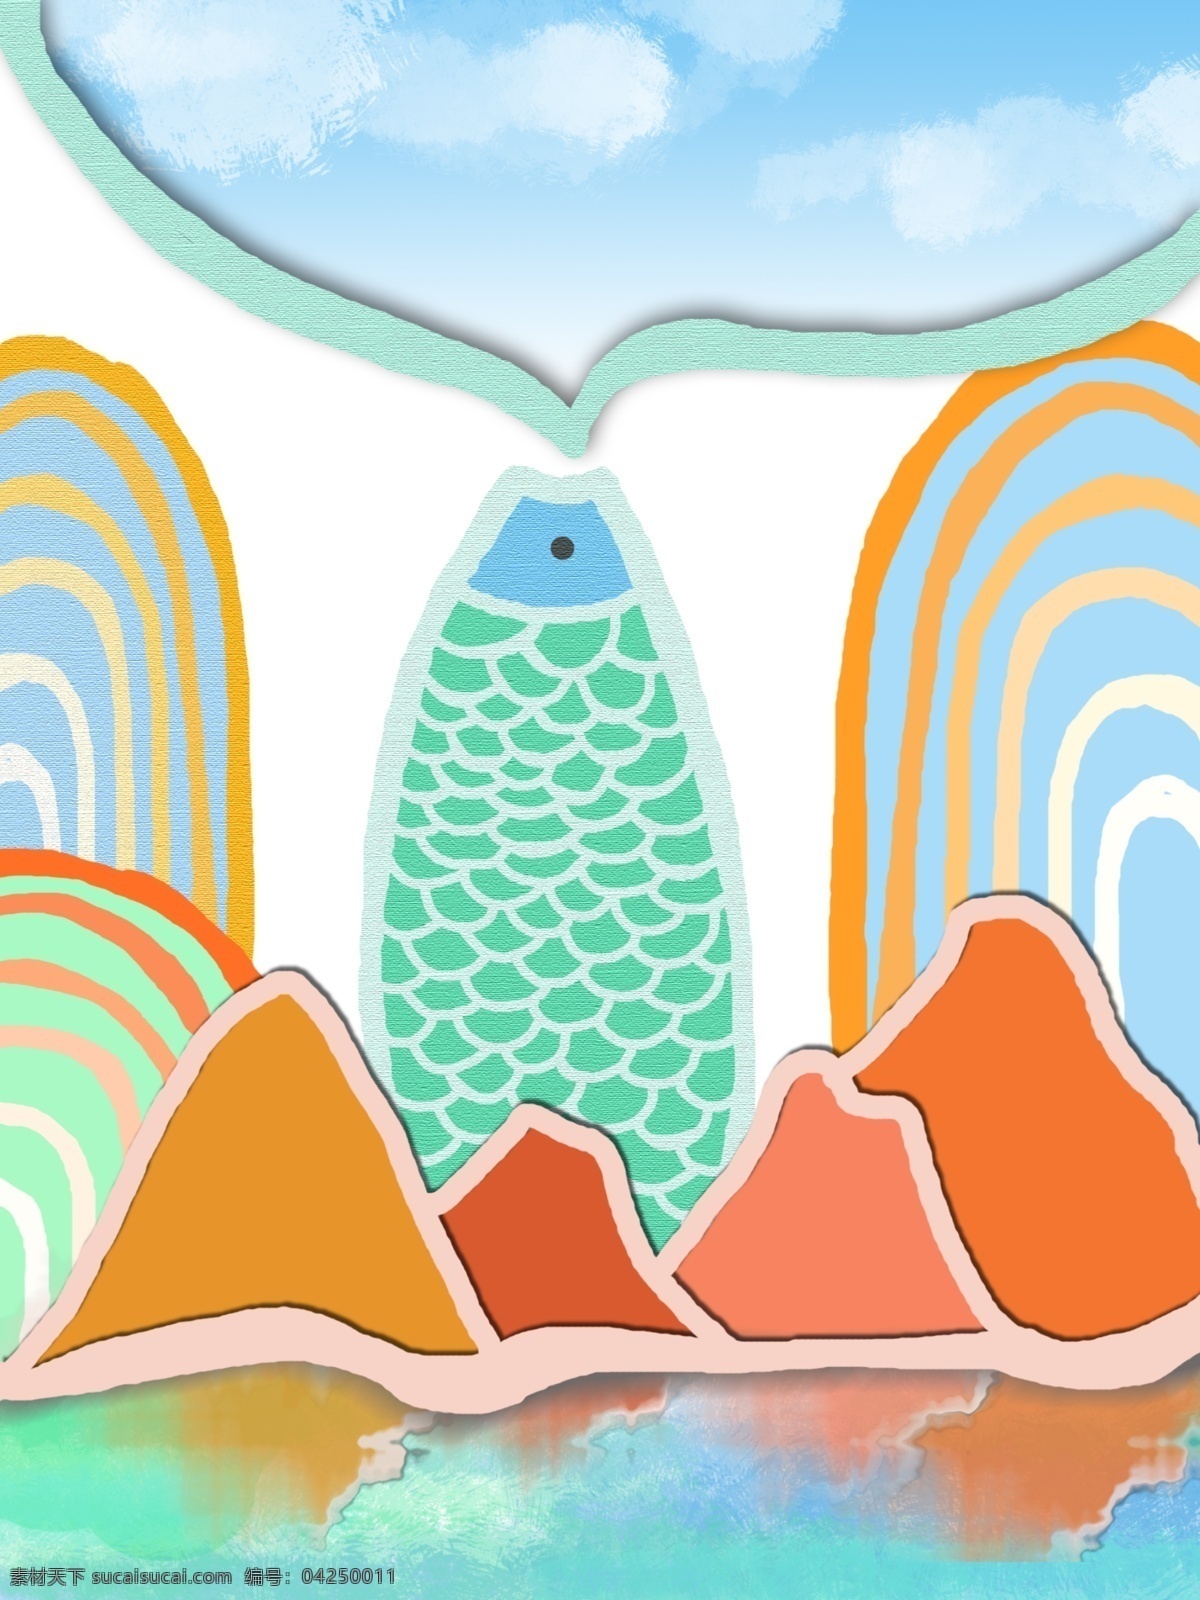 简约 手绘 蓝天 畅想 客厅 装饰画 一联画 手绘鱼 简约清新 橘色边框山 线条 拇指 山